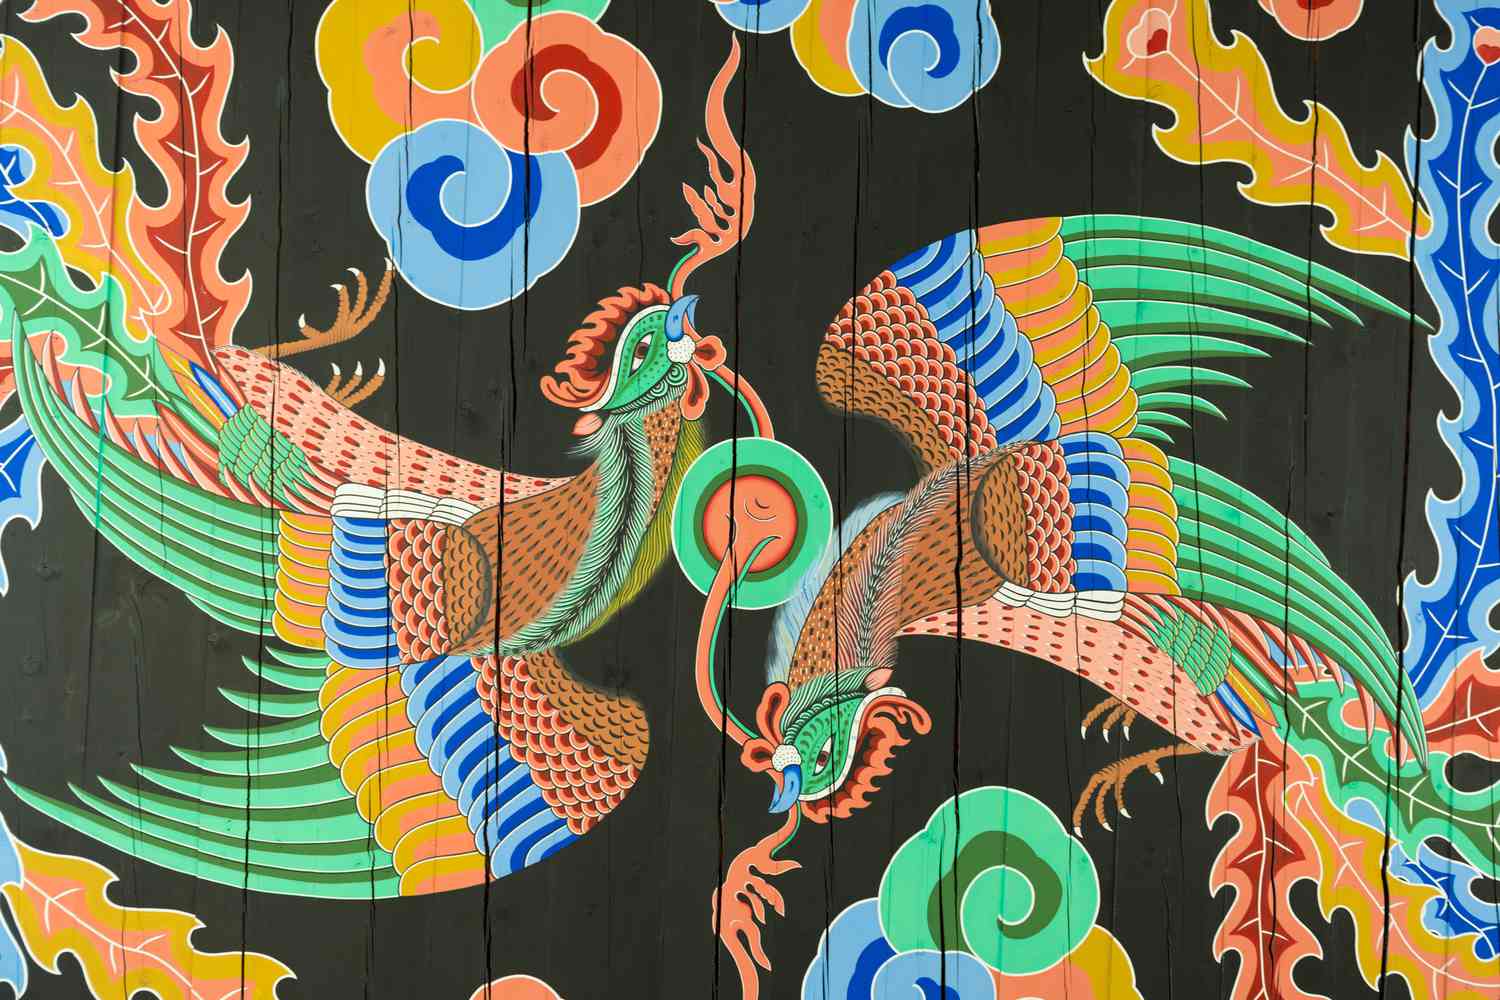 Detalle del techo de dos aves fénix gemelas en Gwanghwamun, puerta principal del palacio Gyengbokgung de Seúl.